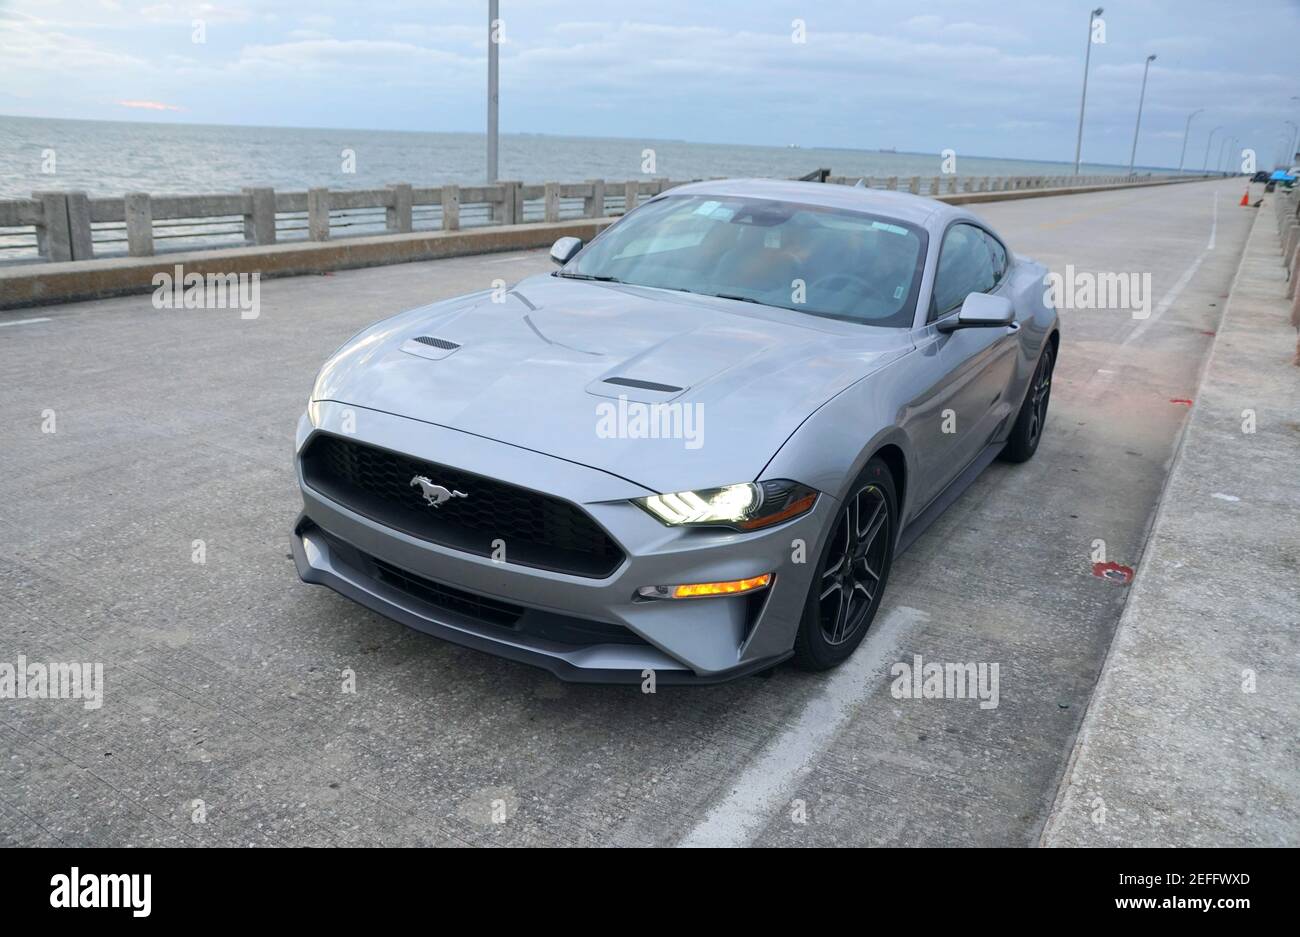 Saint-Pétersbourg, Floride, États-Unis - 16 février 2021 - UNE toute nouvelle Ford Mustang 2021 de couleur argent Banque D'Images